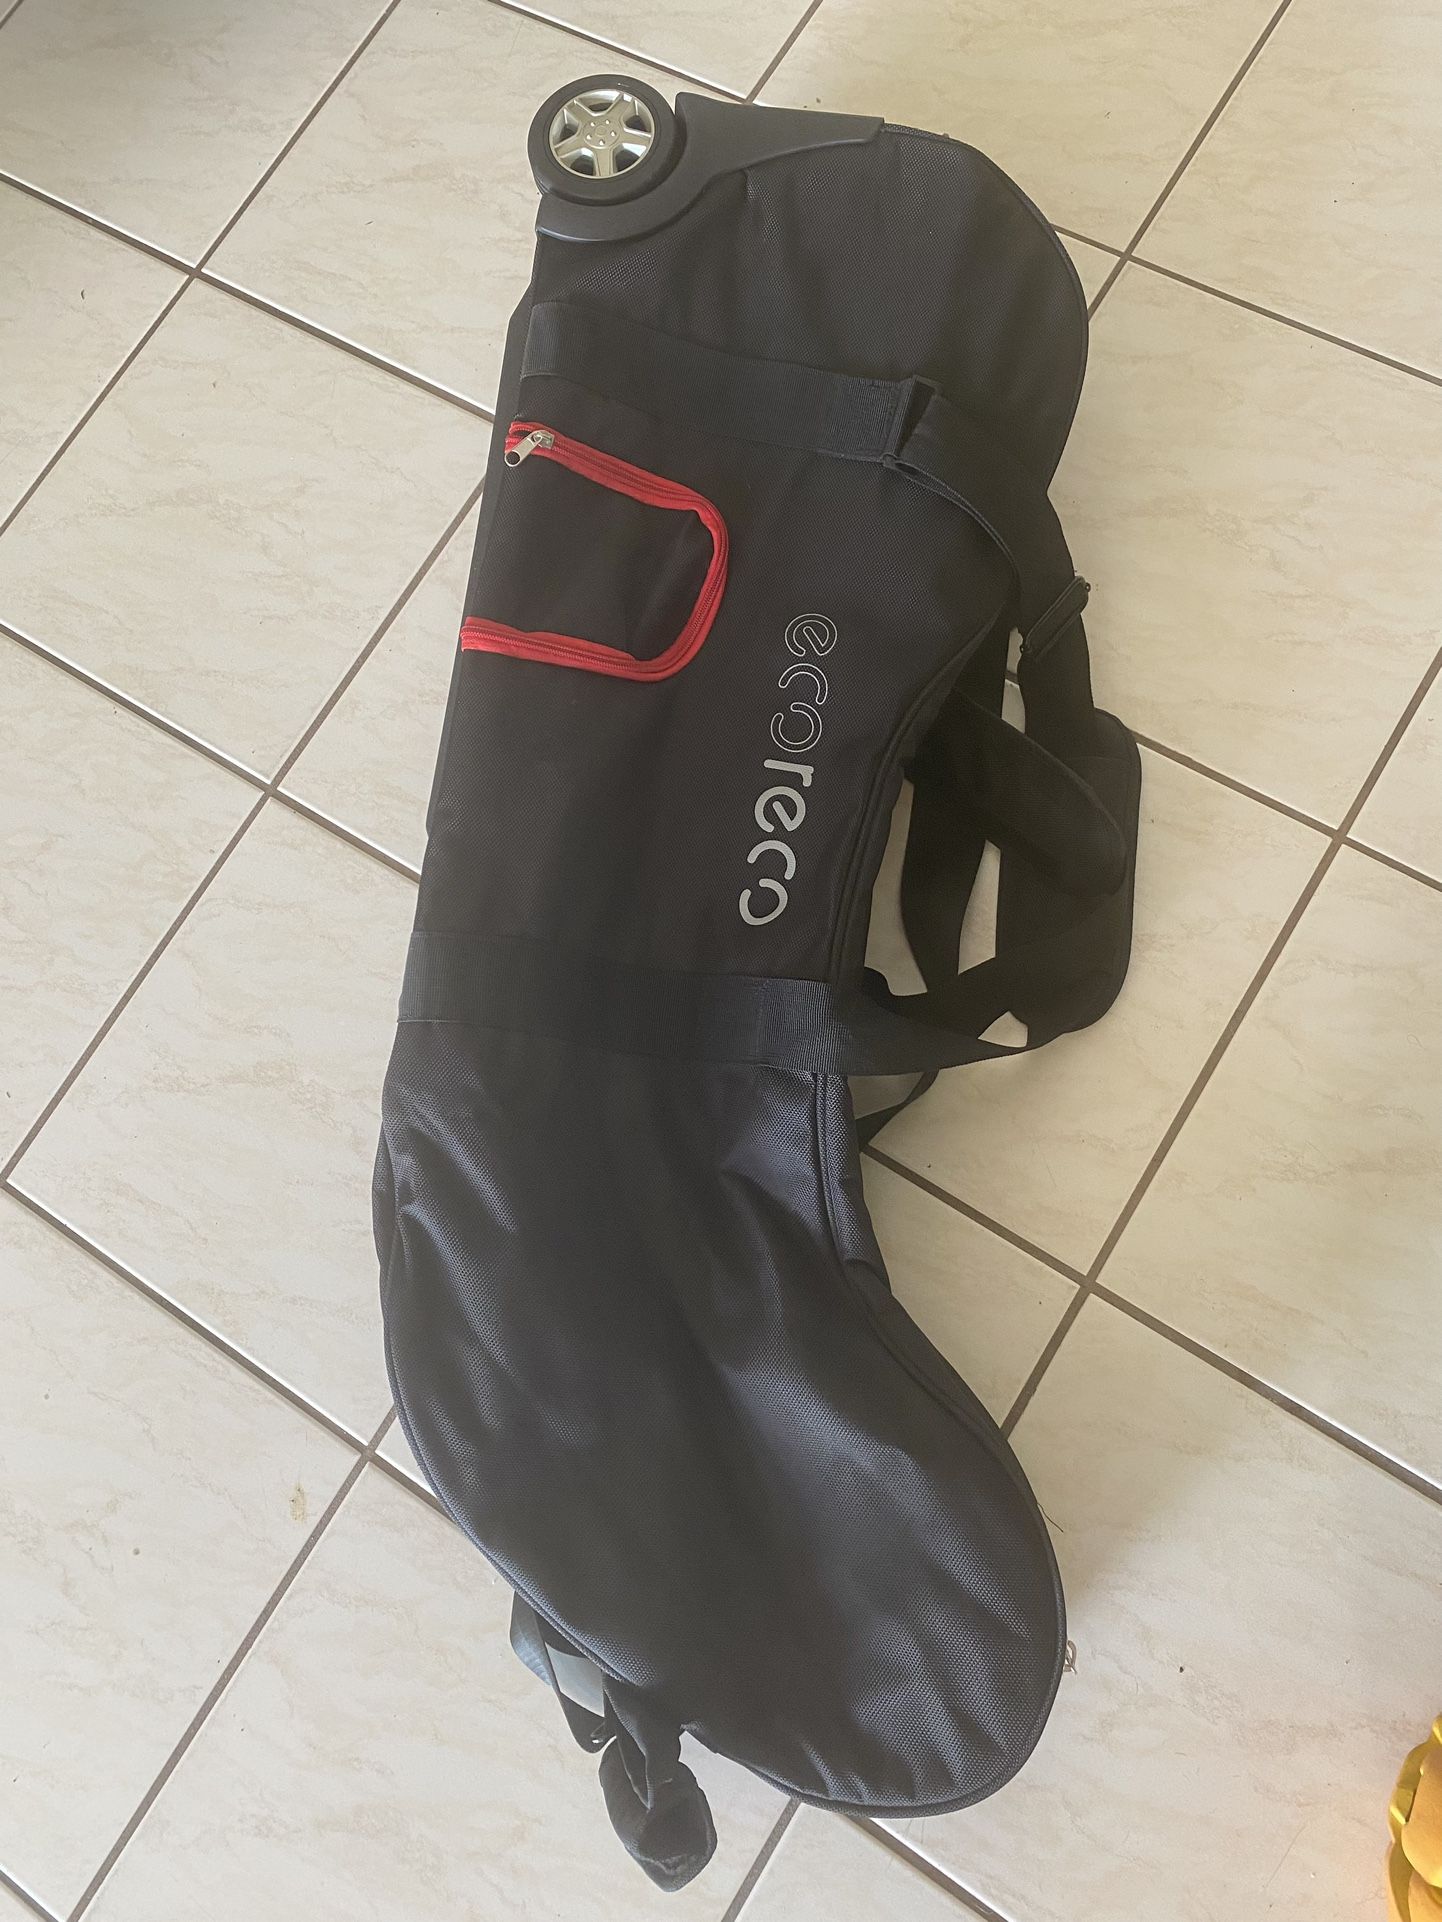 Scooter Travel Bag, Laptop Backpack